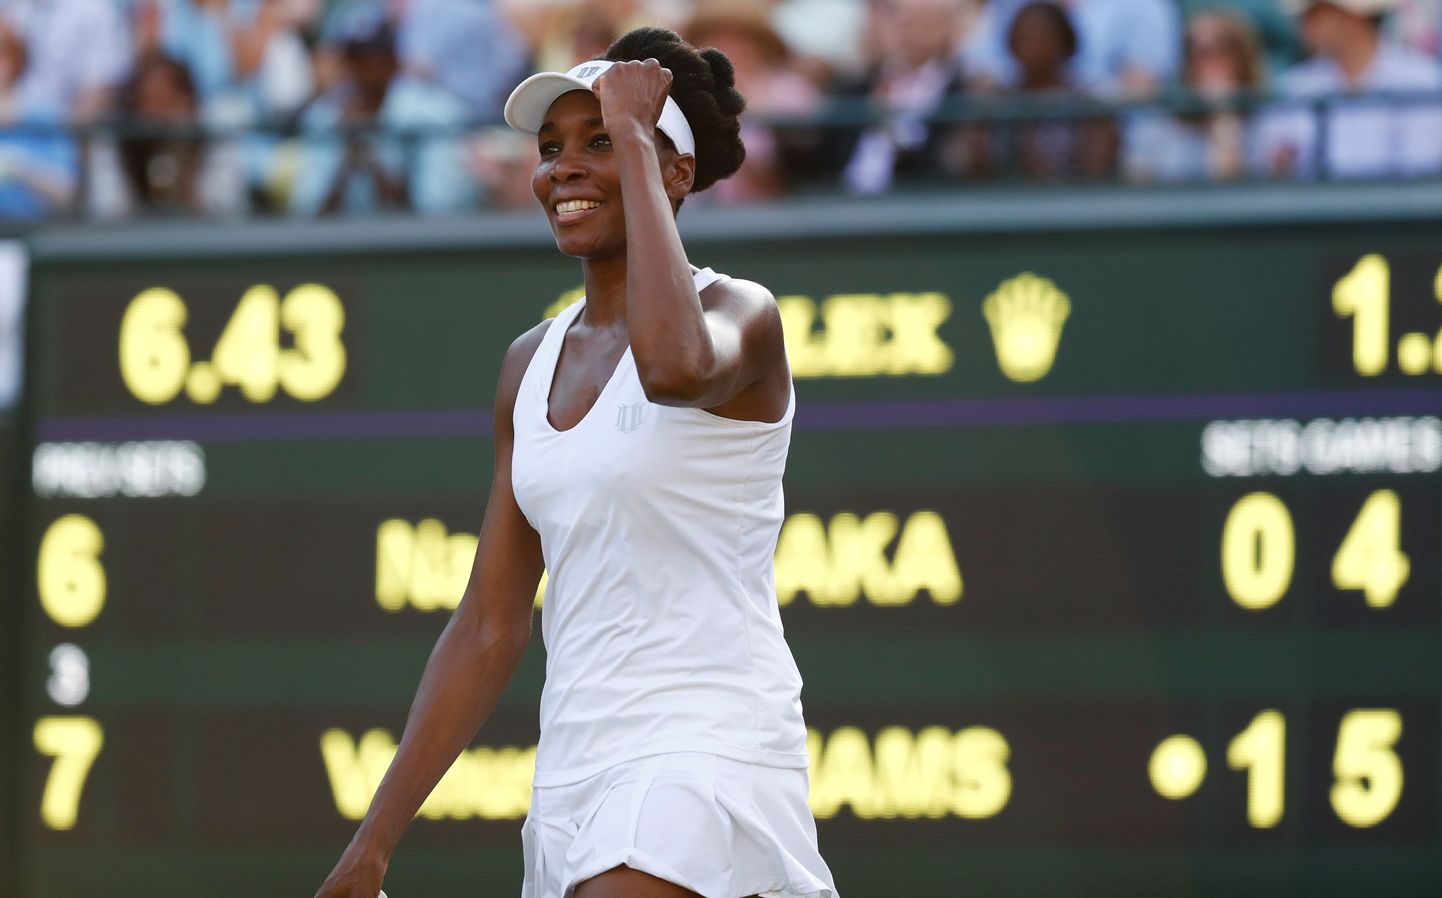 Venus Williams võib võidukalt rusikat viibutada, kuna jõudis Wimbledonis 16 parema sekka.